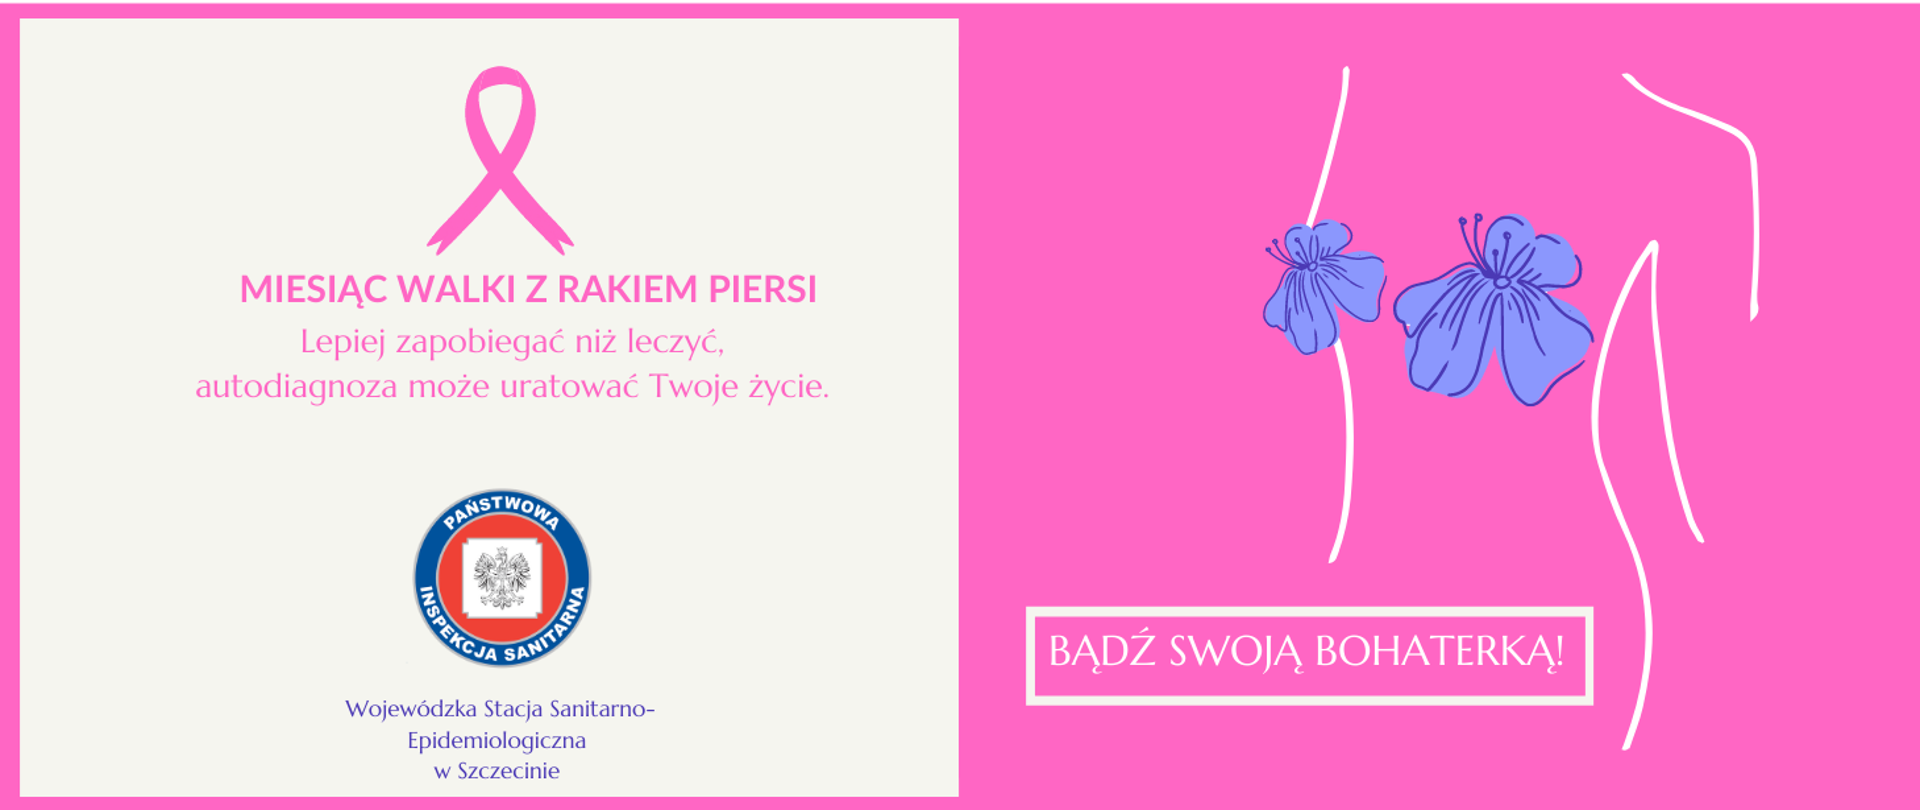 Zdjęcie przedstawia kontury kobiety, która w miejscu piersi ma dwa kwiaty oraz napis "Bądź swoją bohaterką". Po lewej stronie znajduje się różowa wstążeczka i napis Miesiąc walki z rakiem piersi - Lepiej zapobiegać niż leczyć, autodiagnoza może uratować Twoje życie wraz z logo Inspekcji Sanitarnej.